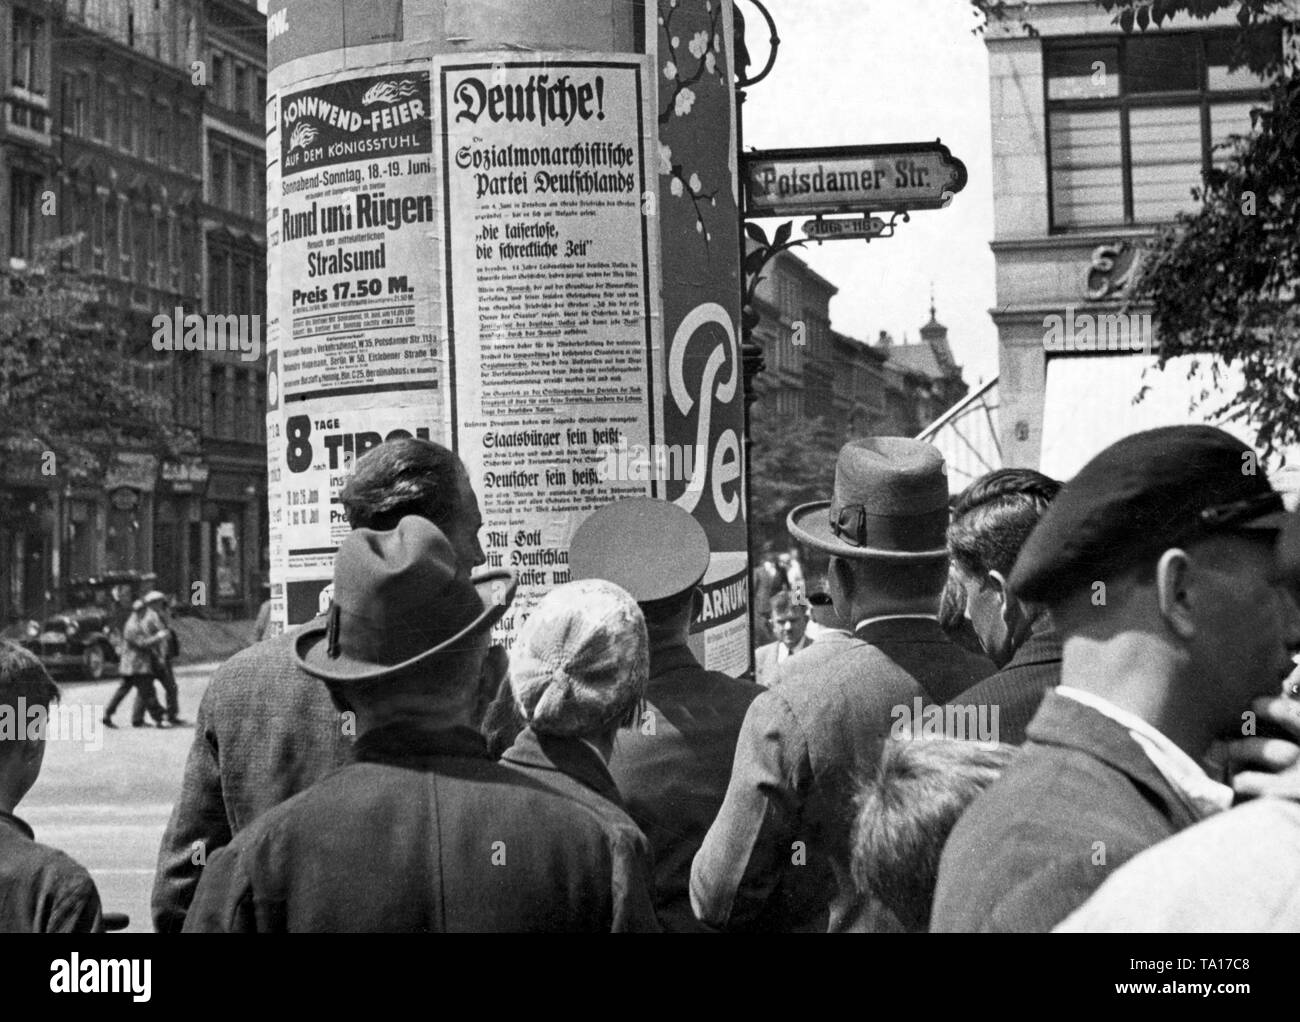 Les passants regarder l'affiche électorale du parti monarchiste Social de l'Allemagne à une colonne dans la publicité de la Potsdamer Strasse. Banque D'Images